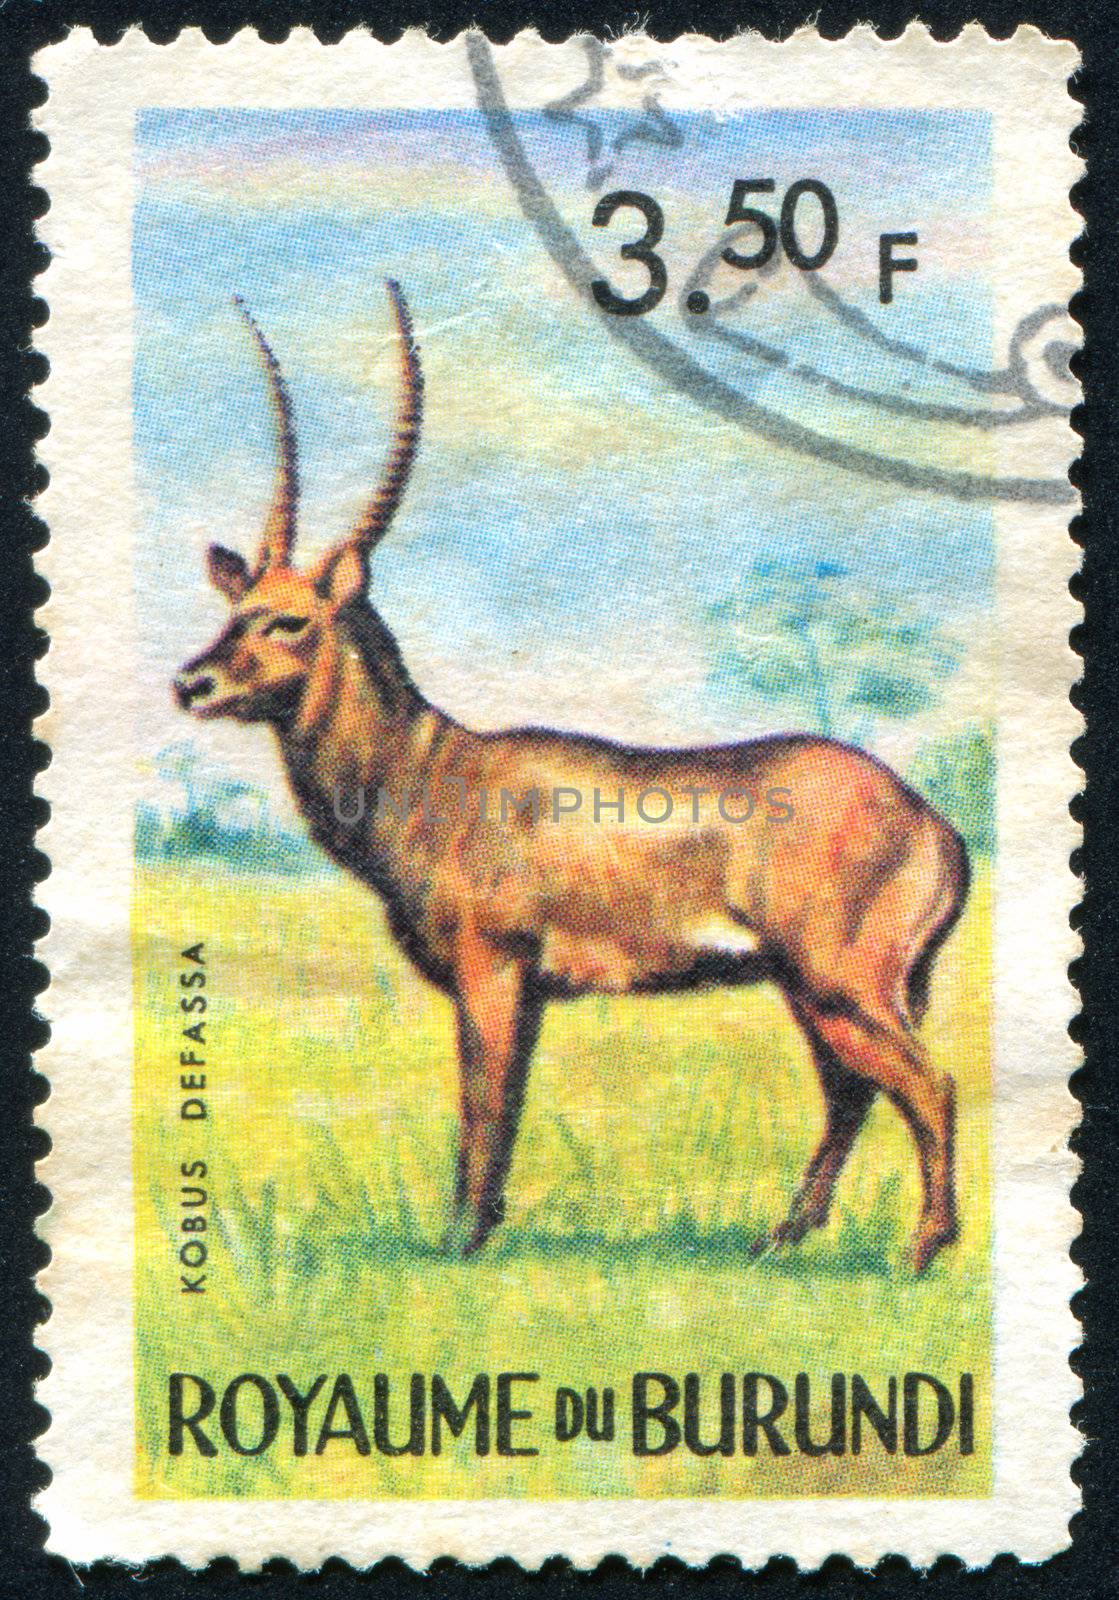 BURUNDI - CIRCA 1963: stamp printed by Burundi, shows antelope, circa 1963